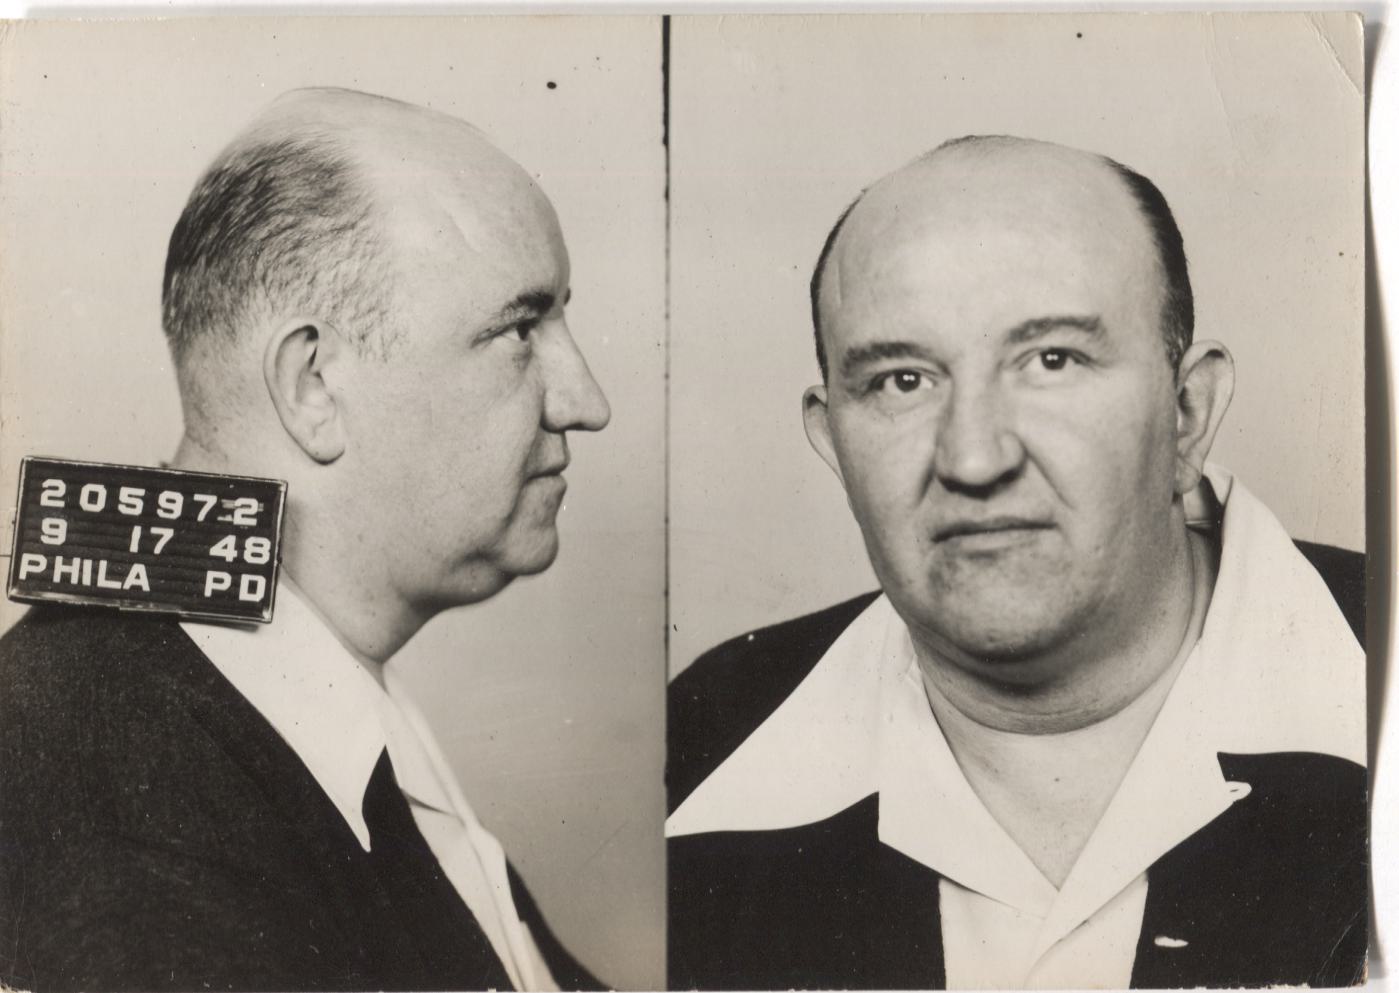 Herbert S. Clark Mugshot - Arrested on 9/17/1948 for Illegal Lottery